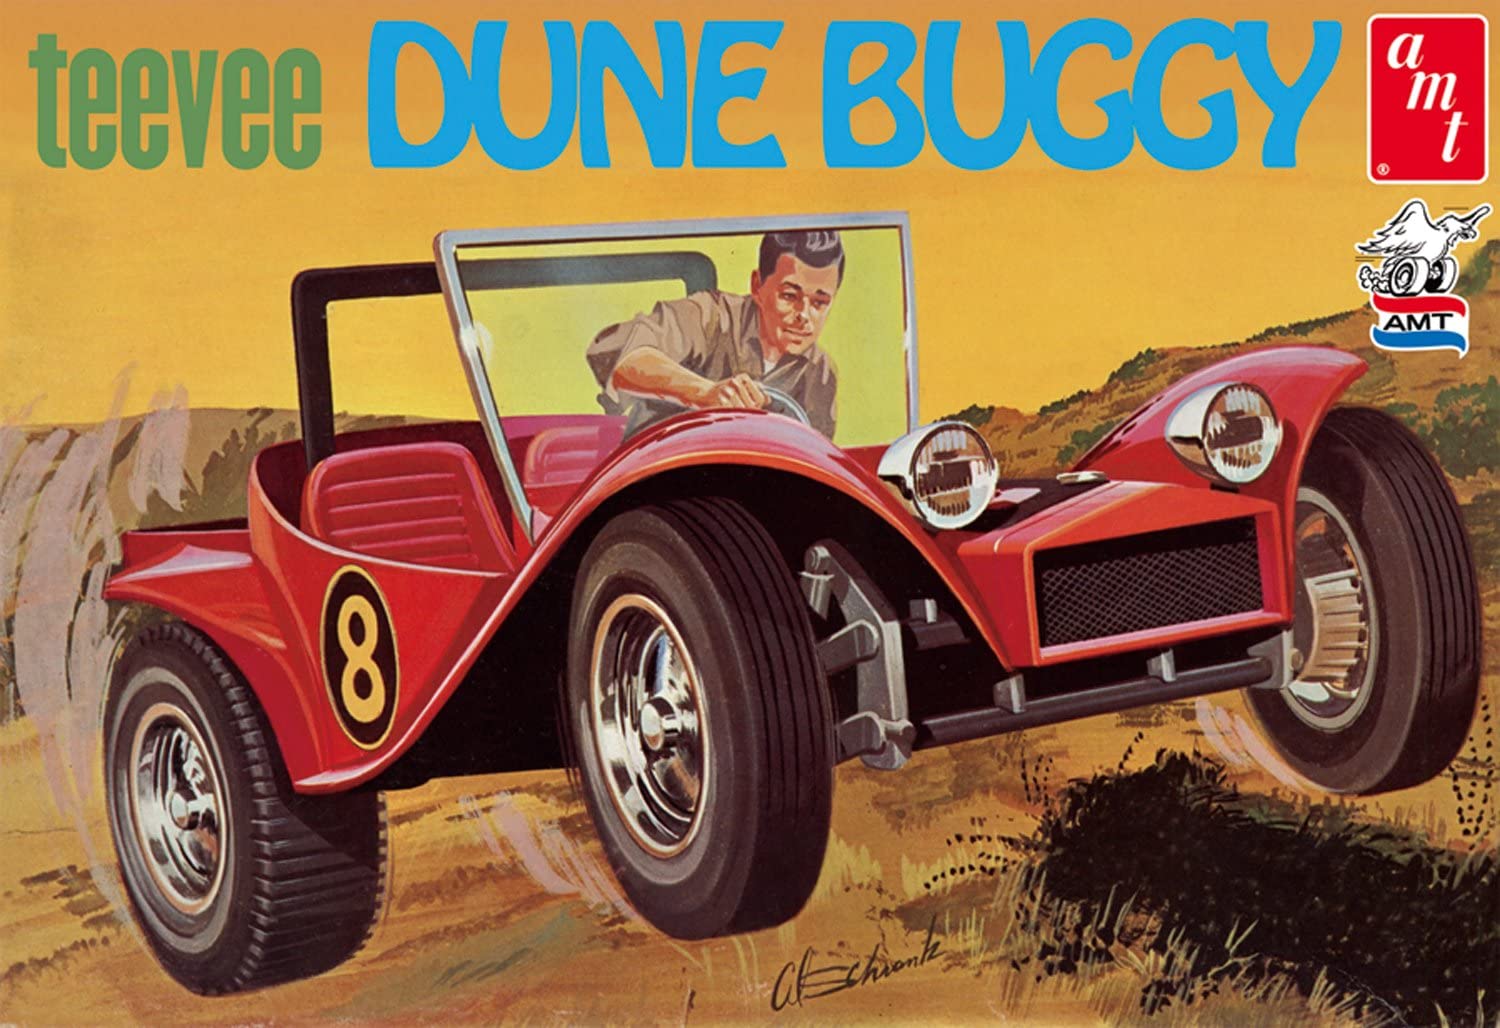 AMT 907 1/25 Tee Vee Dune Buggy